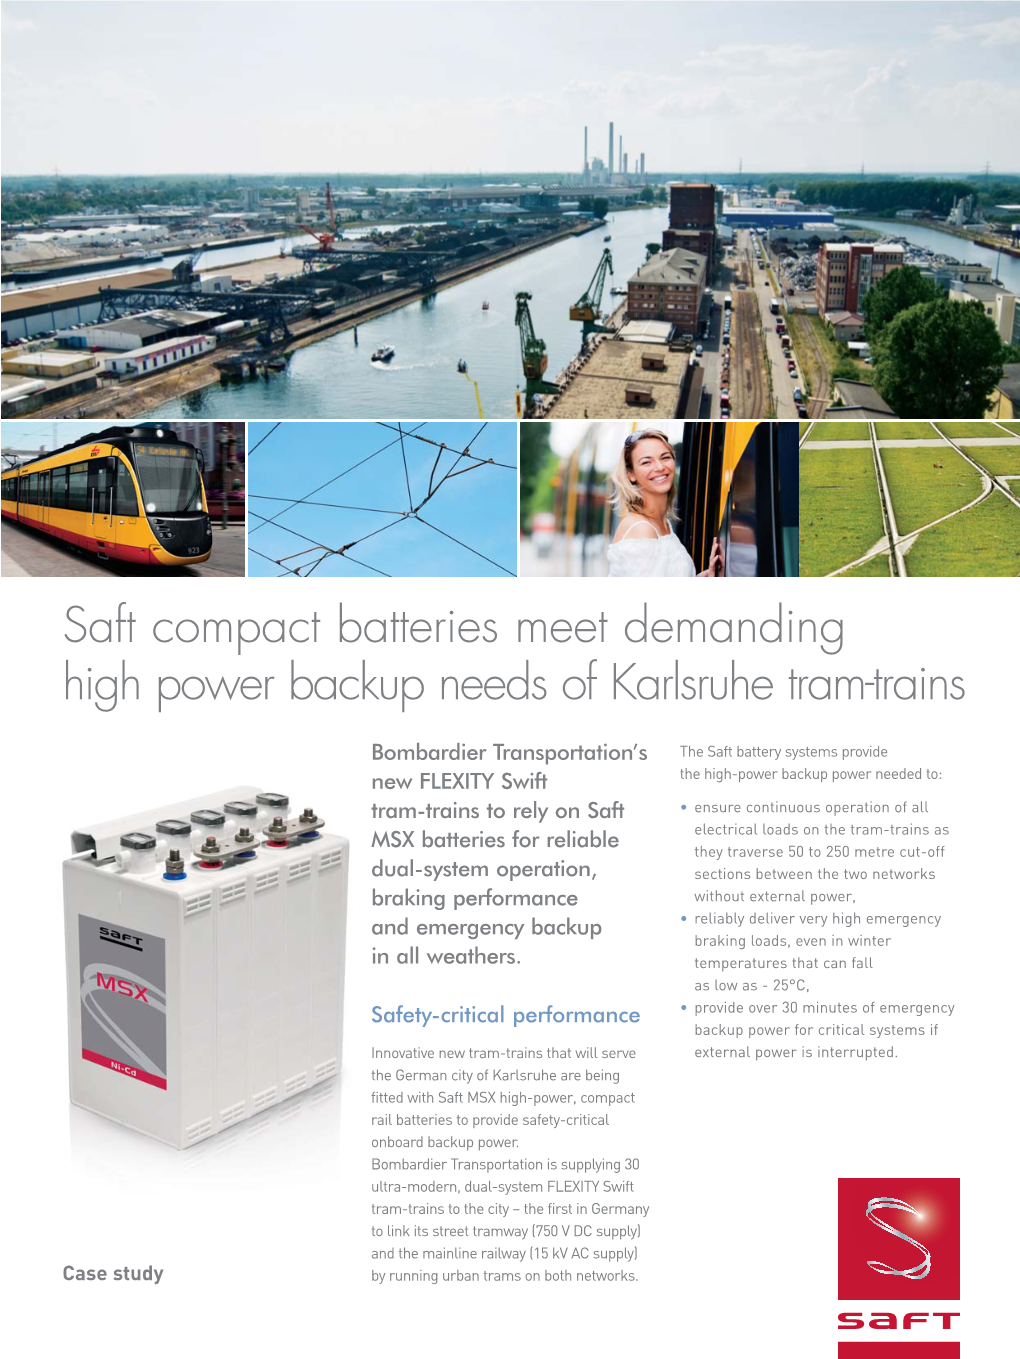 Saft Compact Batteries Meet Demanding High Power Backup Needs of Karlsruhe Tram-Trains